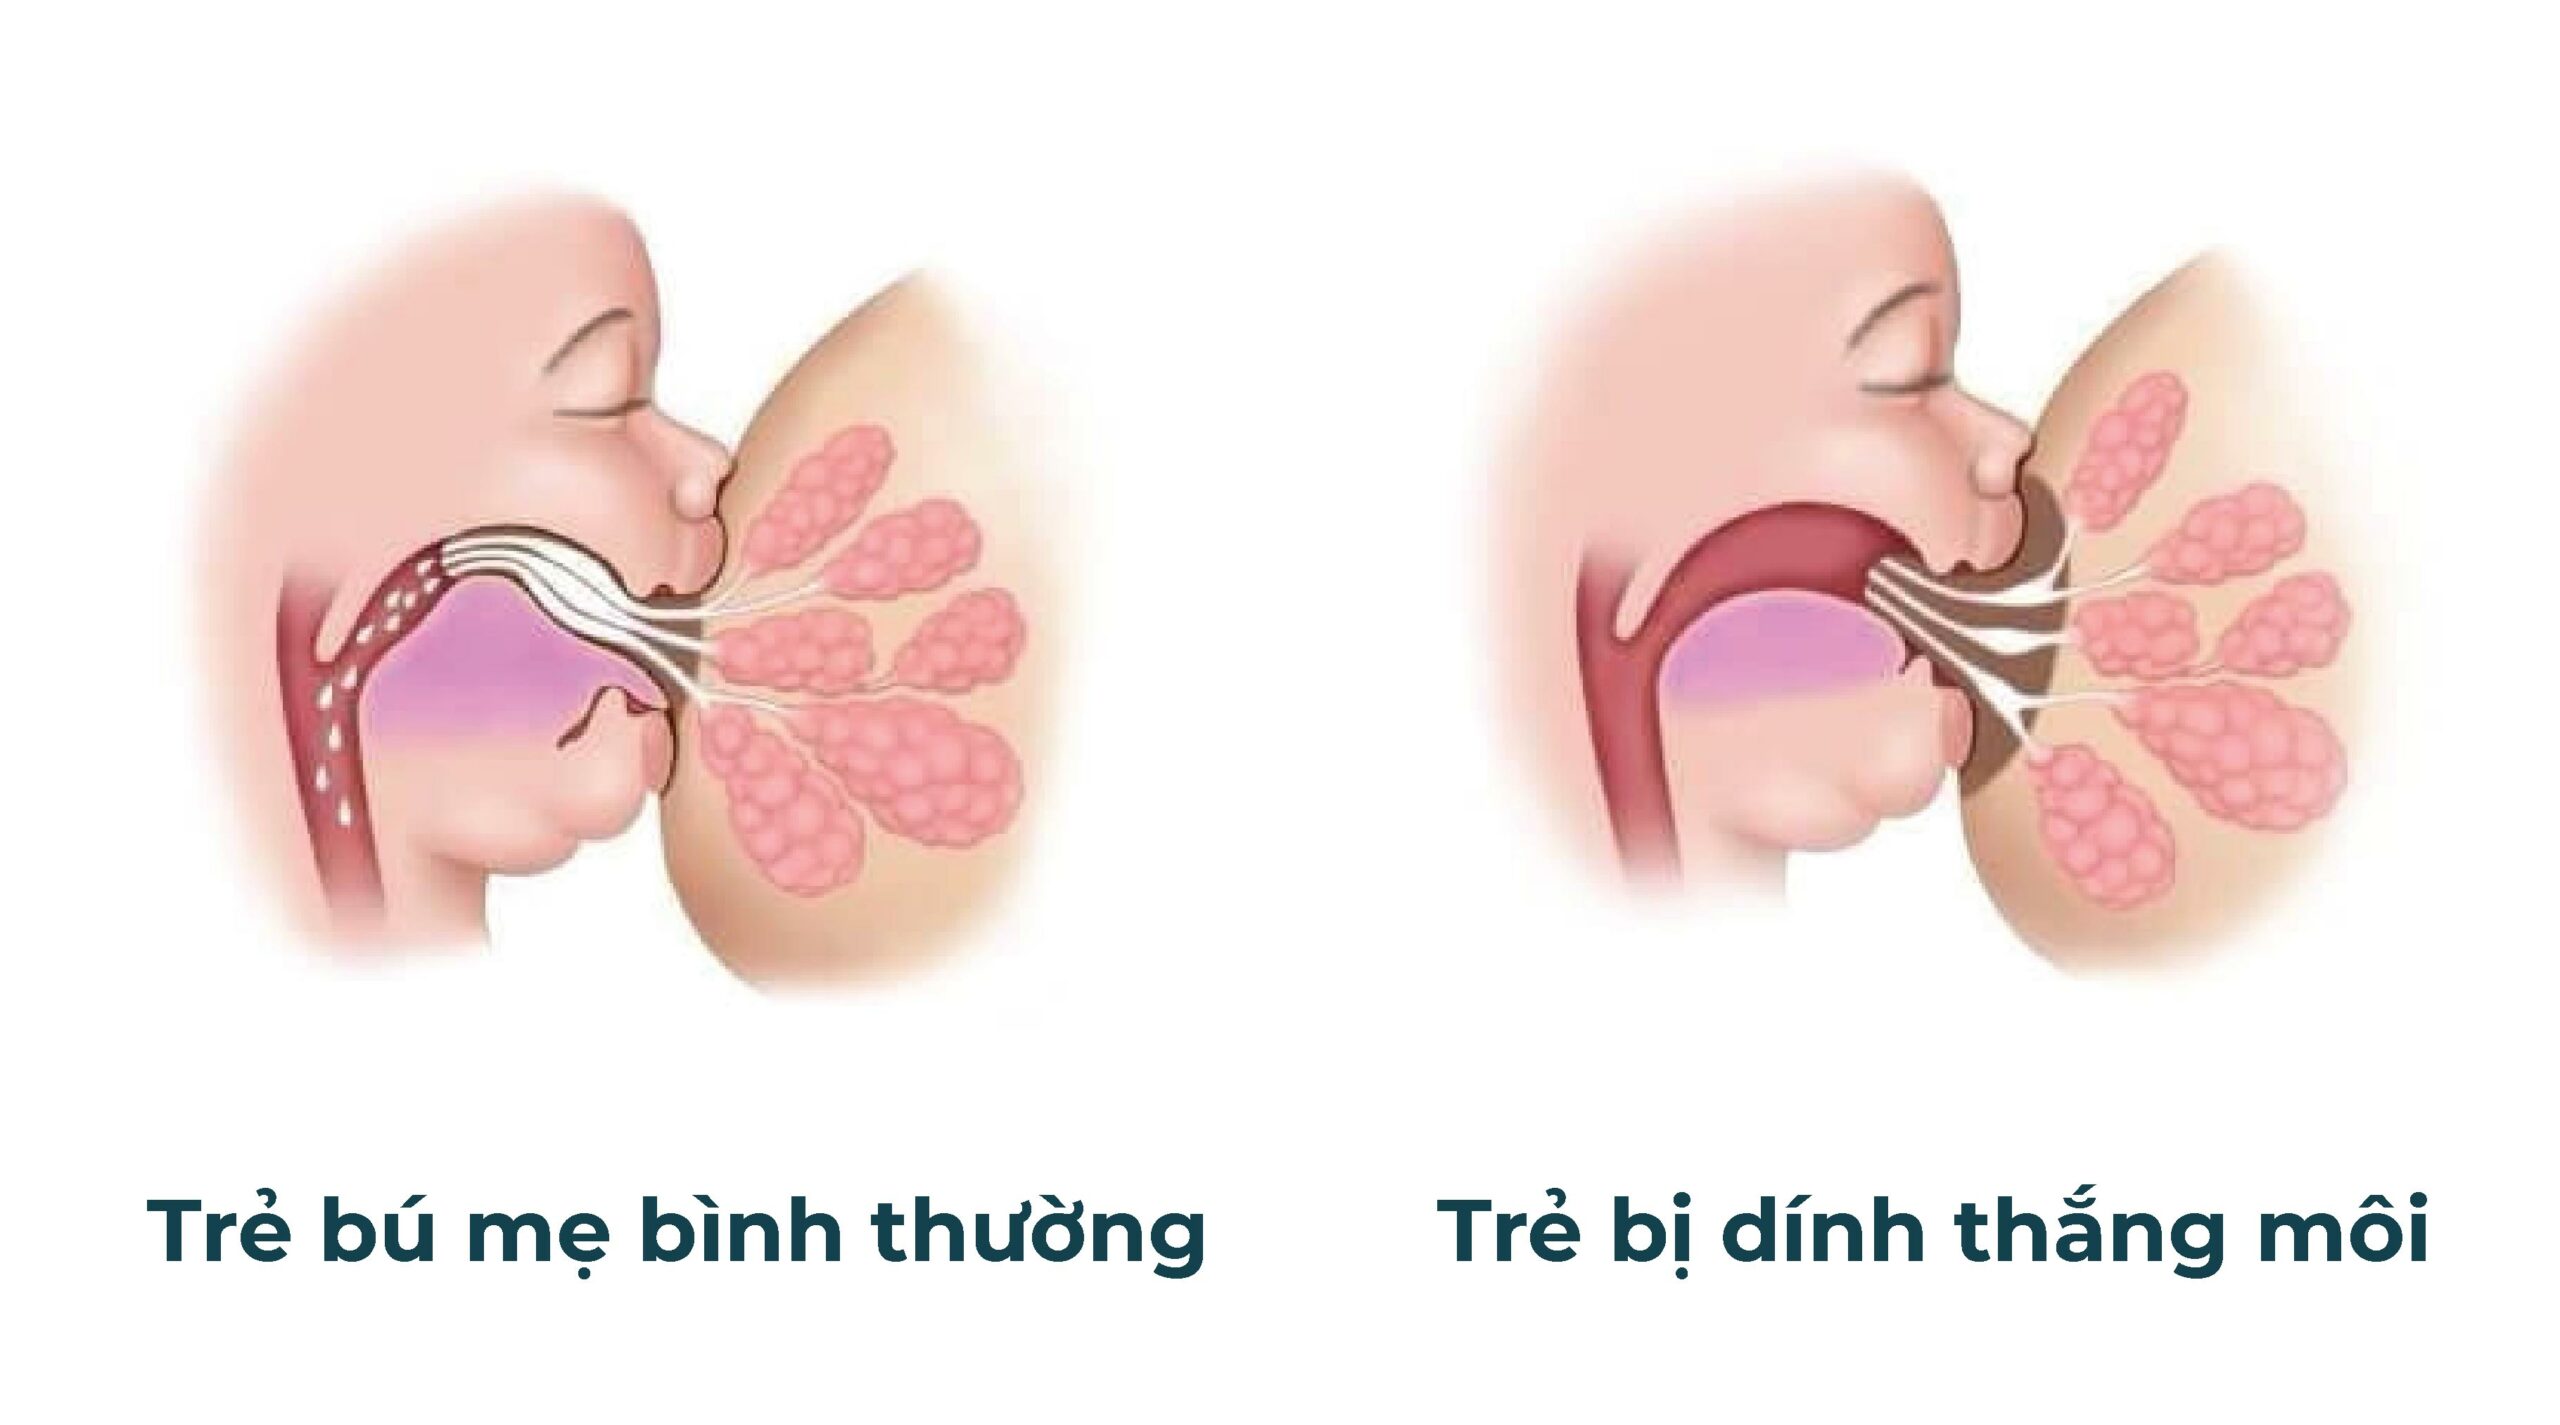 Hình ảnh minh họa tình trạng dính thắng môi trên ở trẻ sơ sinh (hình bên phải)